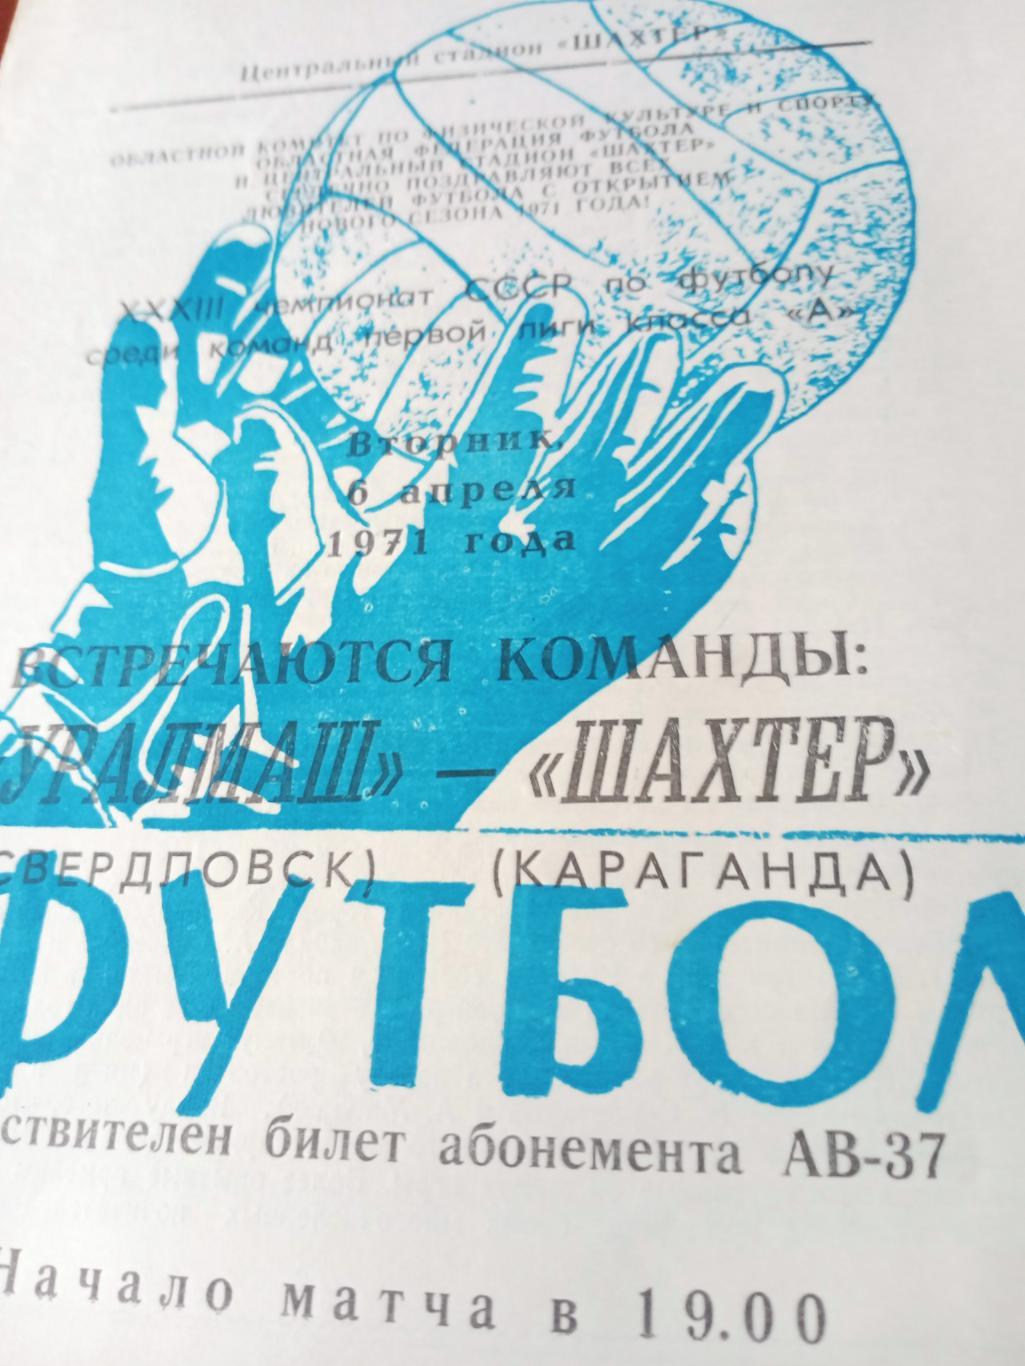 Шахтер Караганда - Уралмаш Свердловск. 6 апреля 1971 год